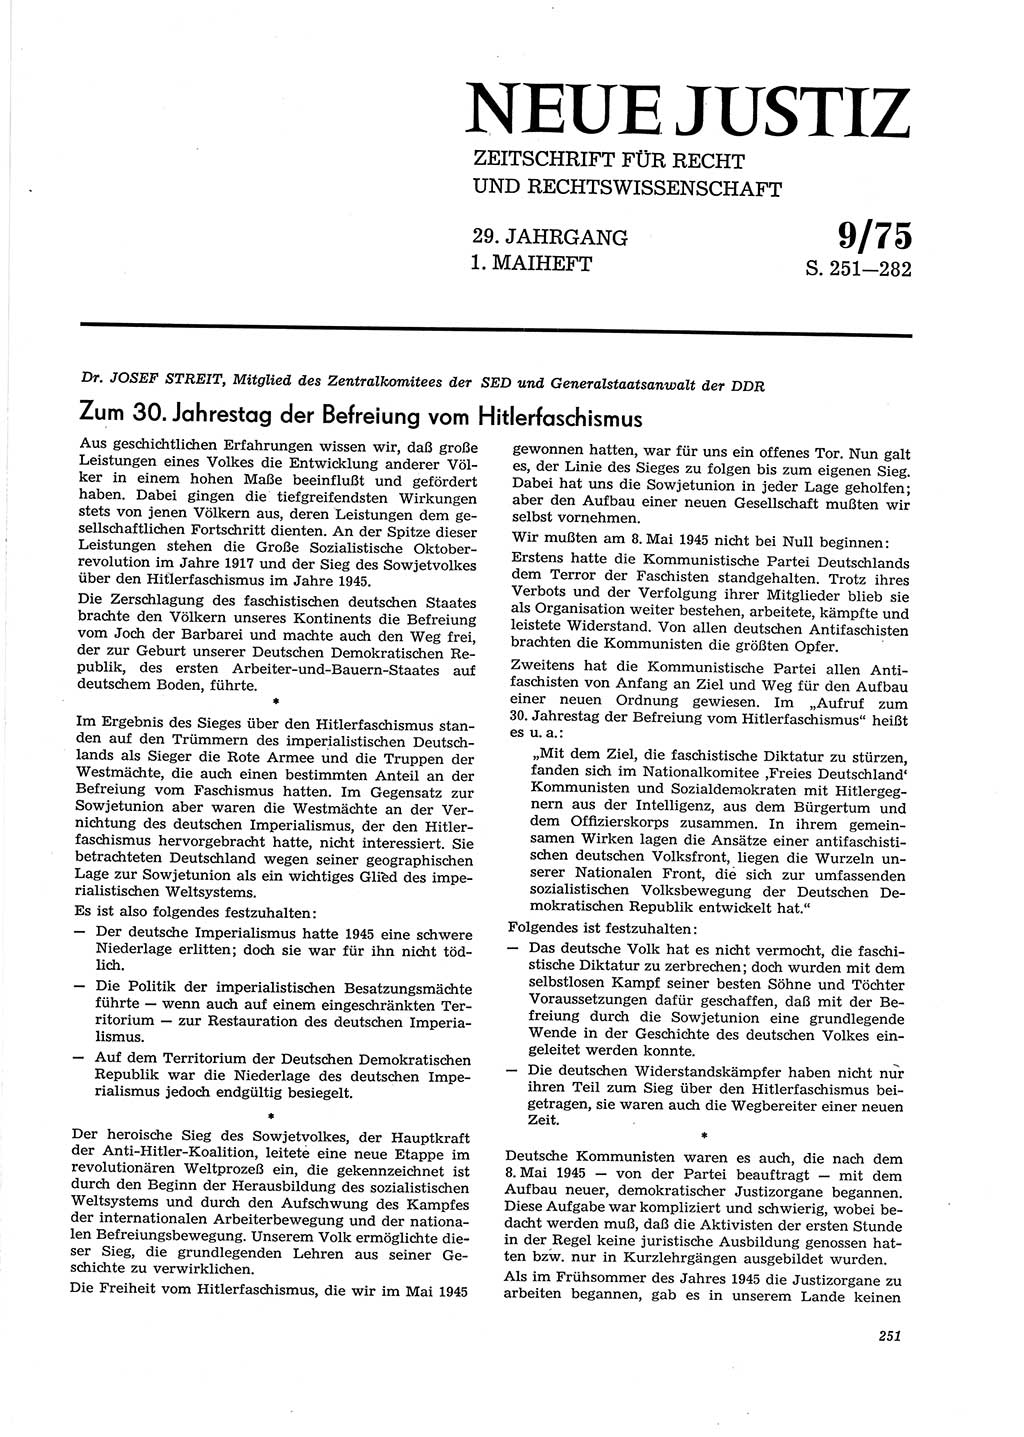 Neue Justiz (NJ), Zeitschrift für Recht und Rechtswissenschaft [Deutsche Demokratische Republik (DDR)], 29. Jahrgang 1975, Seite 251 (NJ DDR 1975, S. 251)